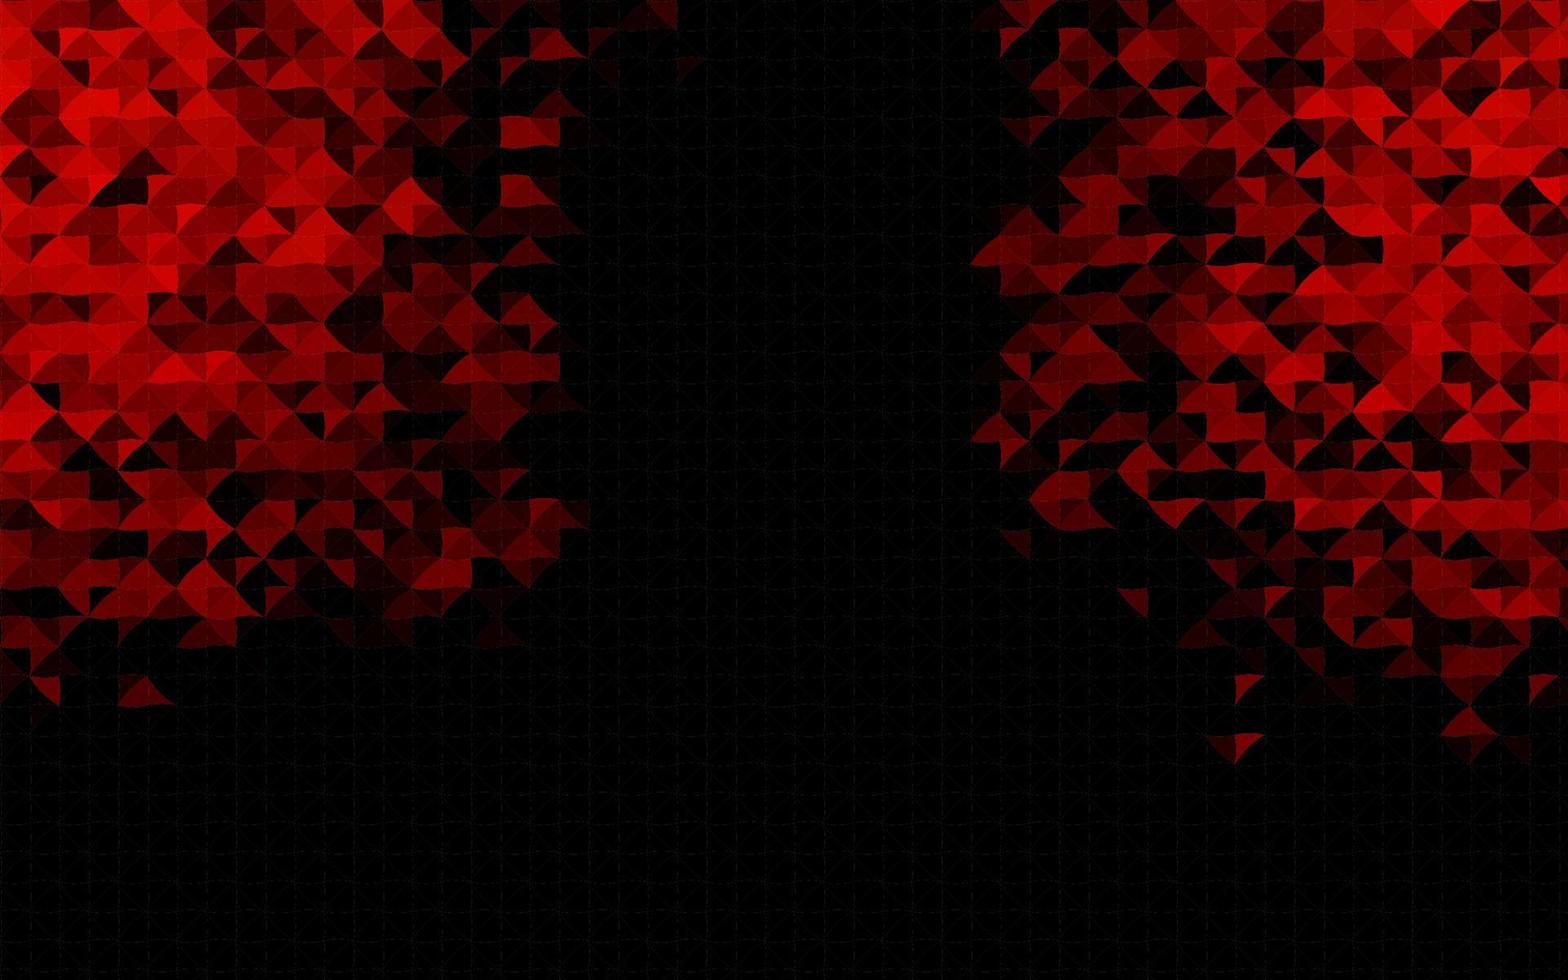 plantilla de vector rojo oscuro con cristales, triángulos.